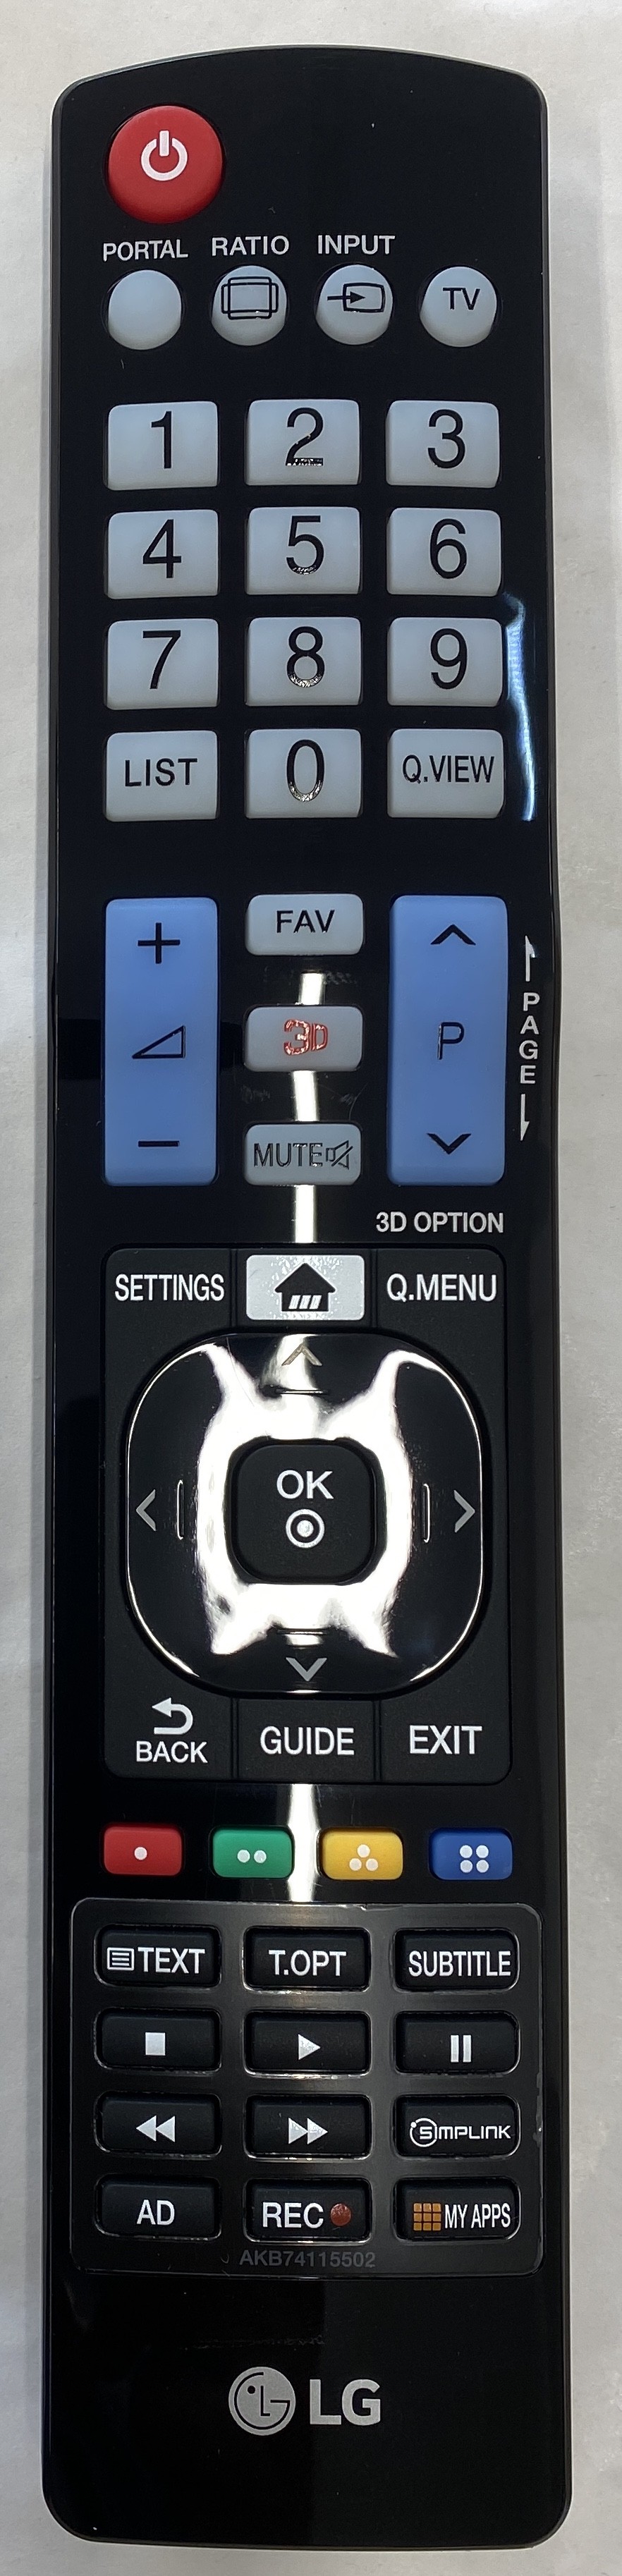 LG 46LD550 Remote Control Original